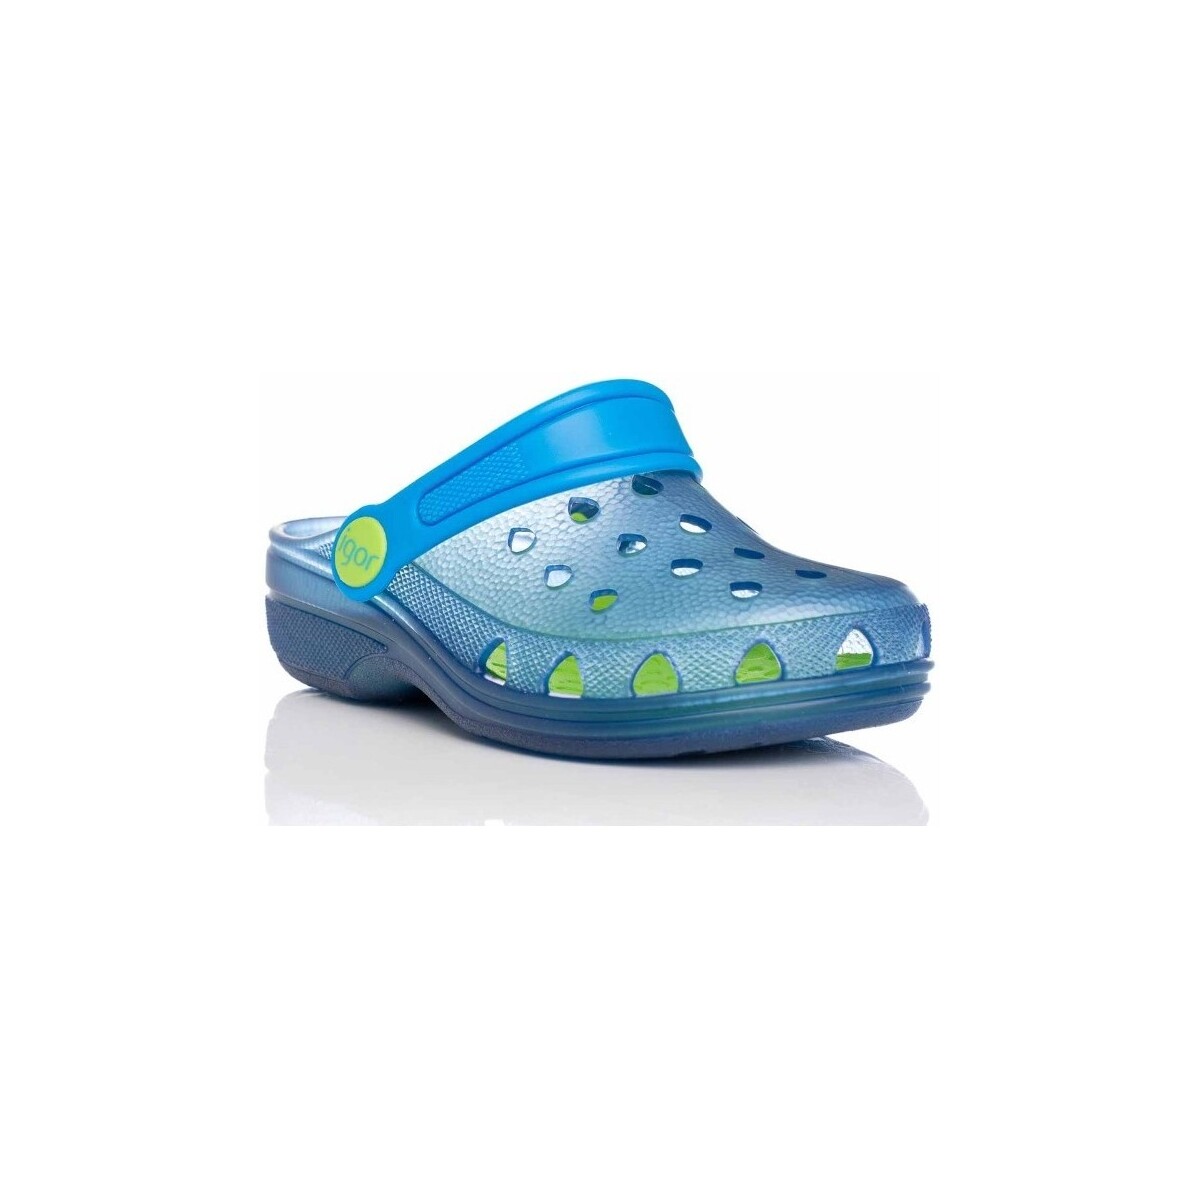 Zapatos Chanclas IGOR S10116-032 Azul